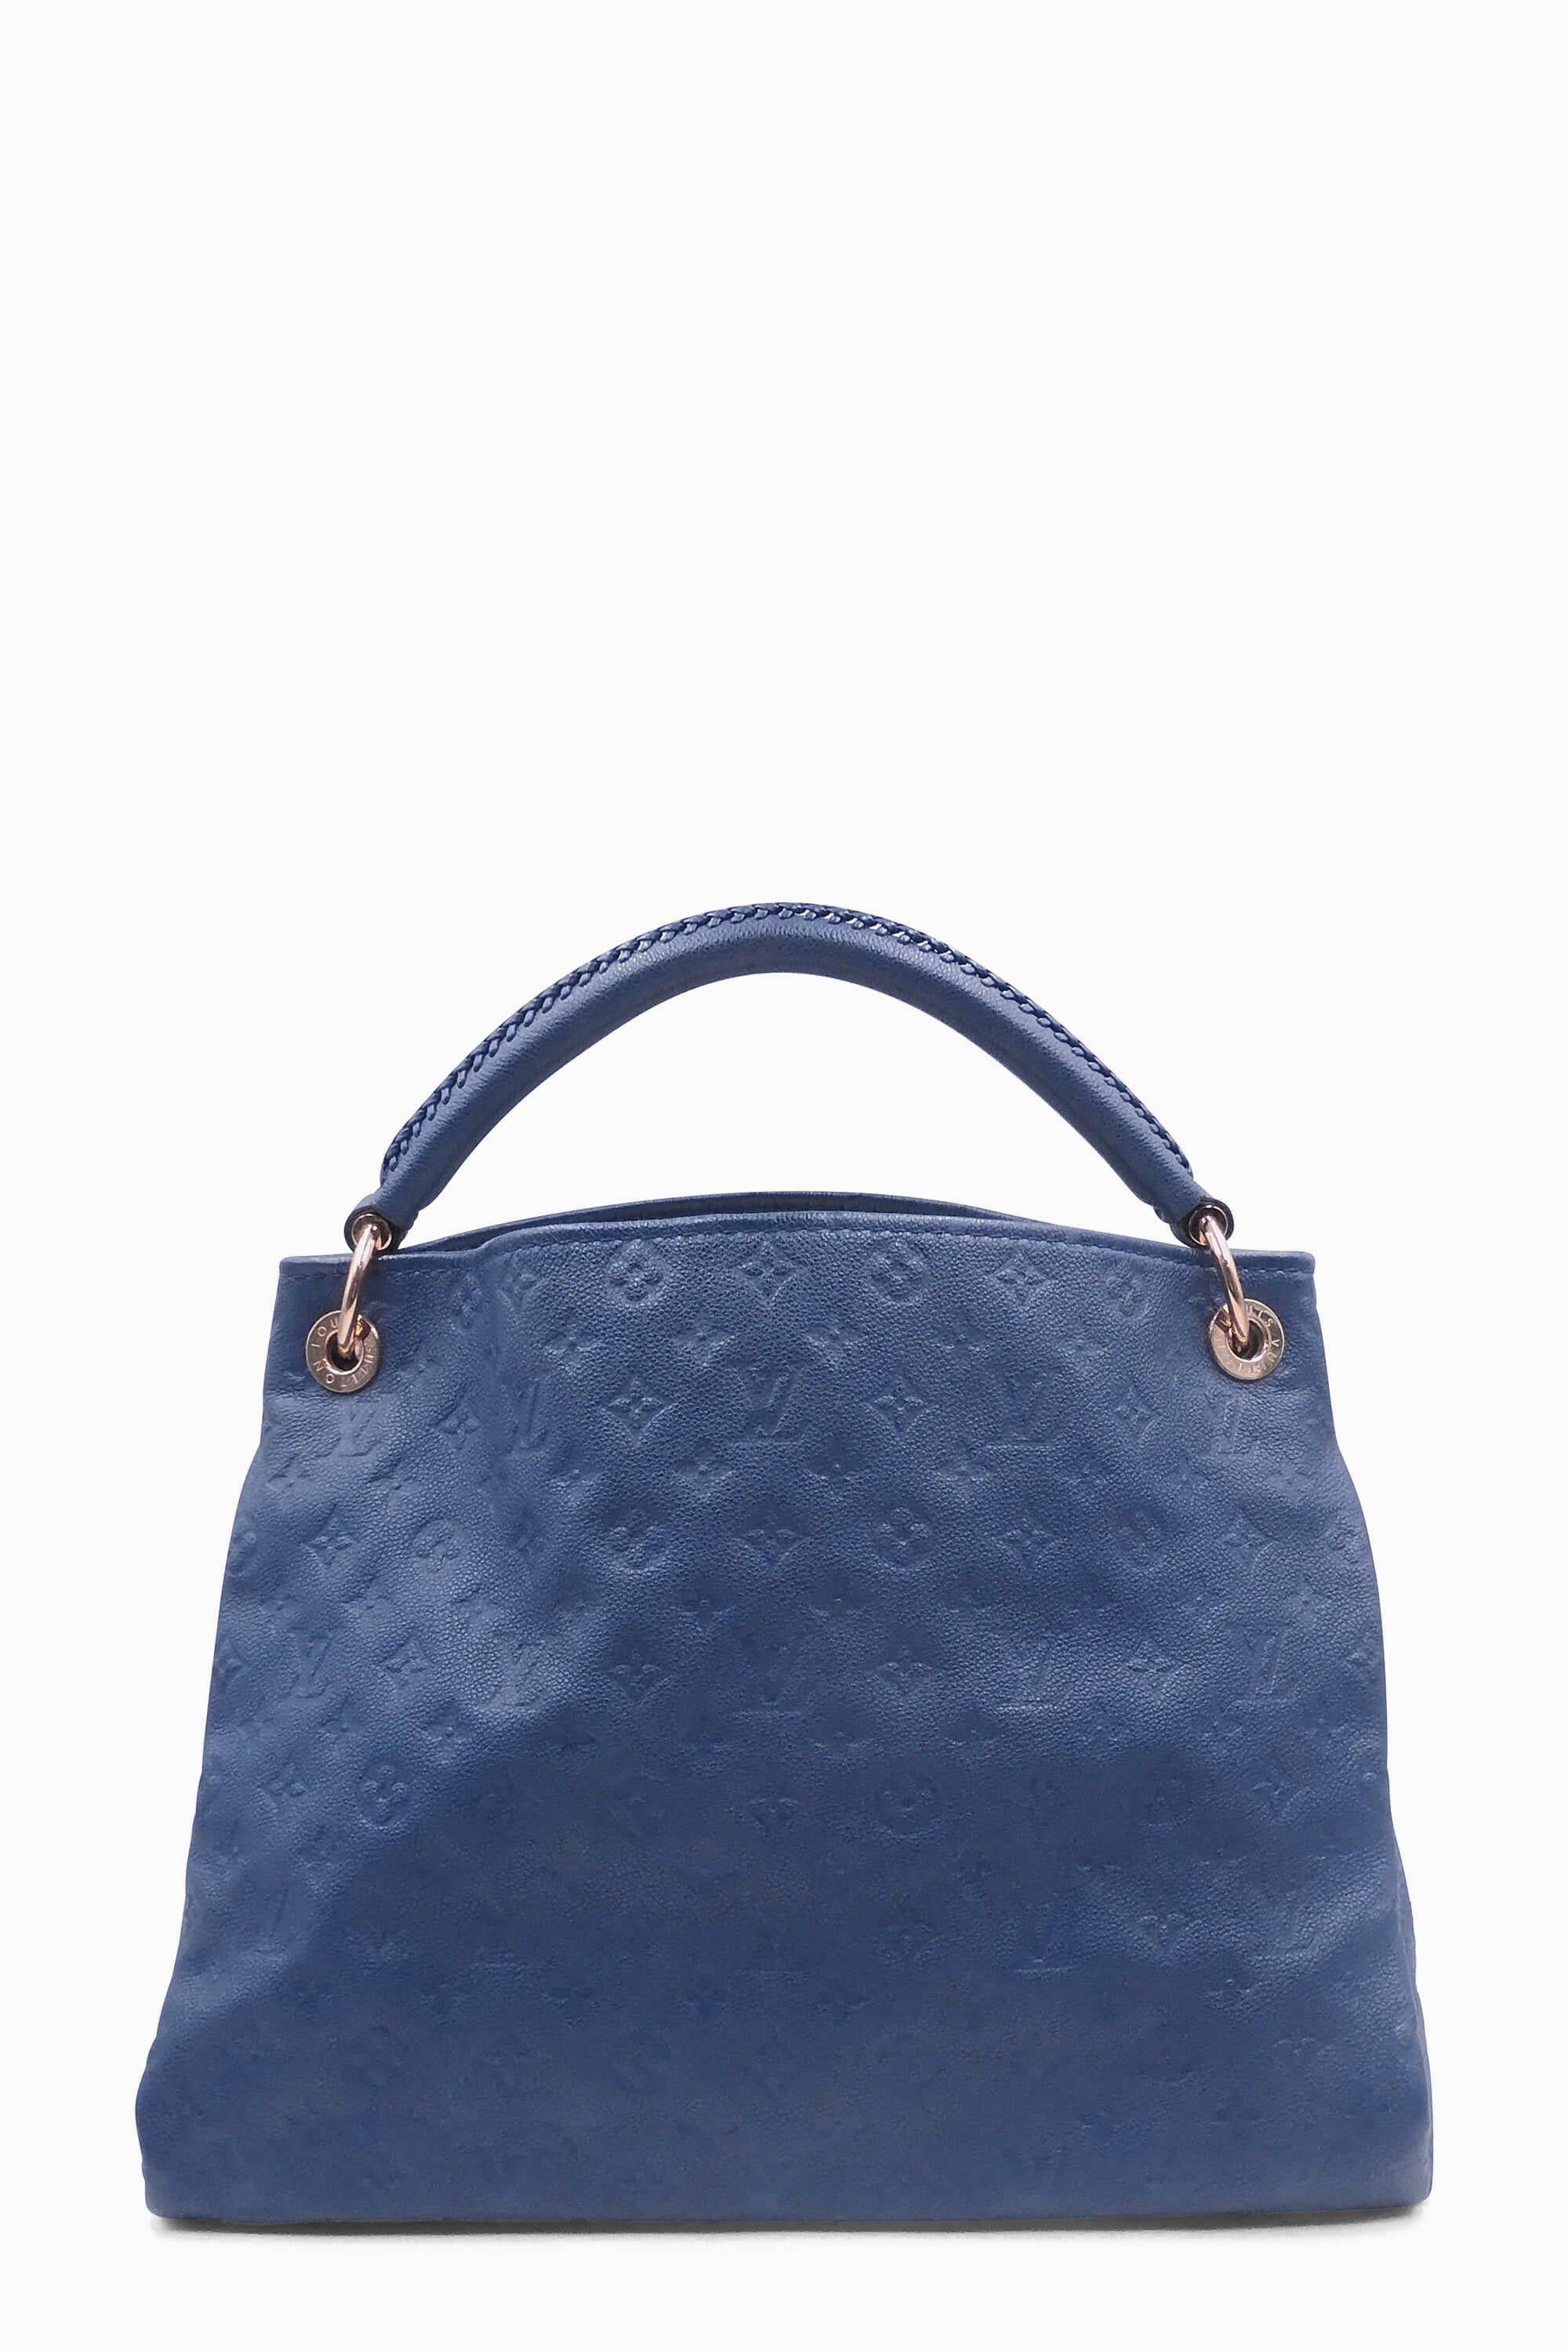 Louis Vuitton Empreinte Artsy MM in Orage Blue